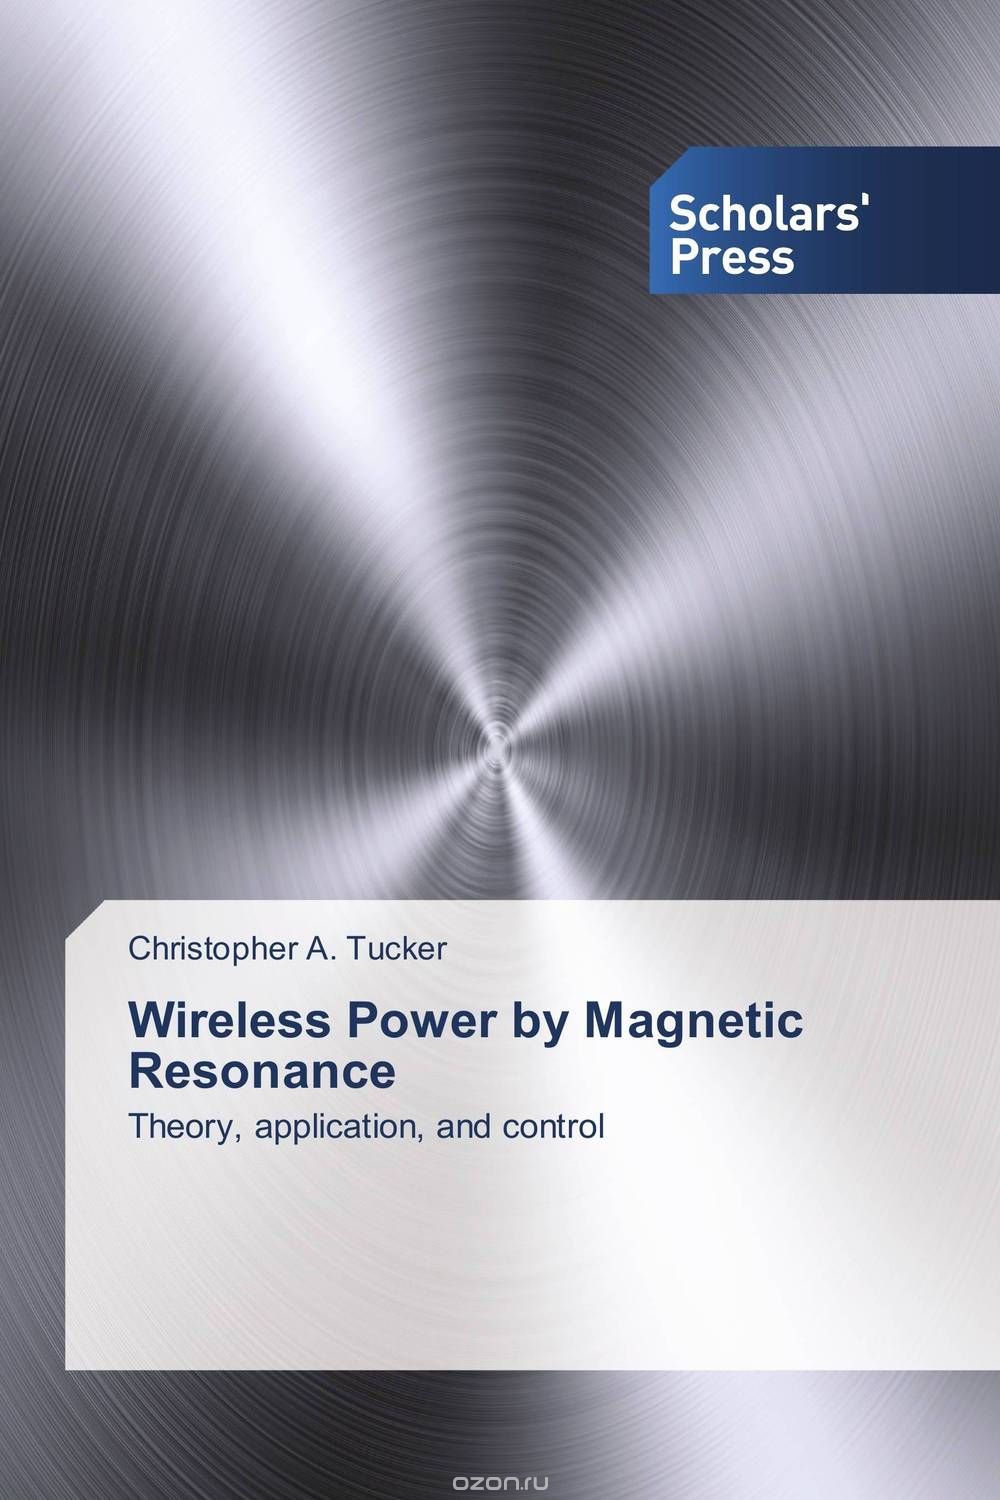 Скачать книгу "Wireless Power by Magnetic Resonance"